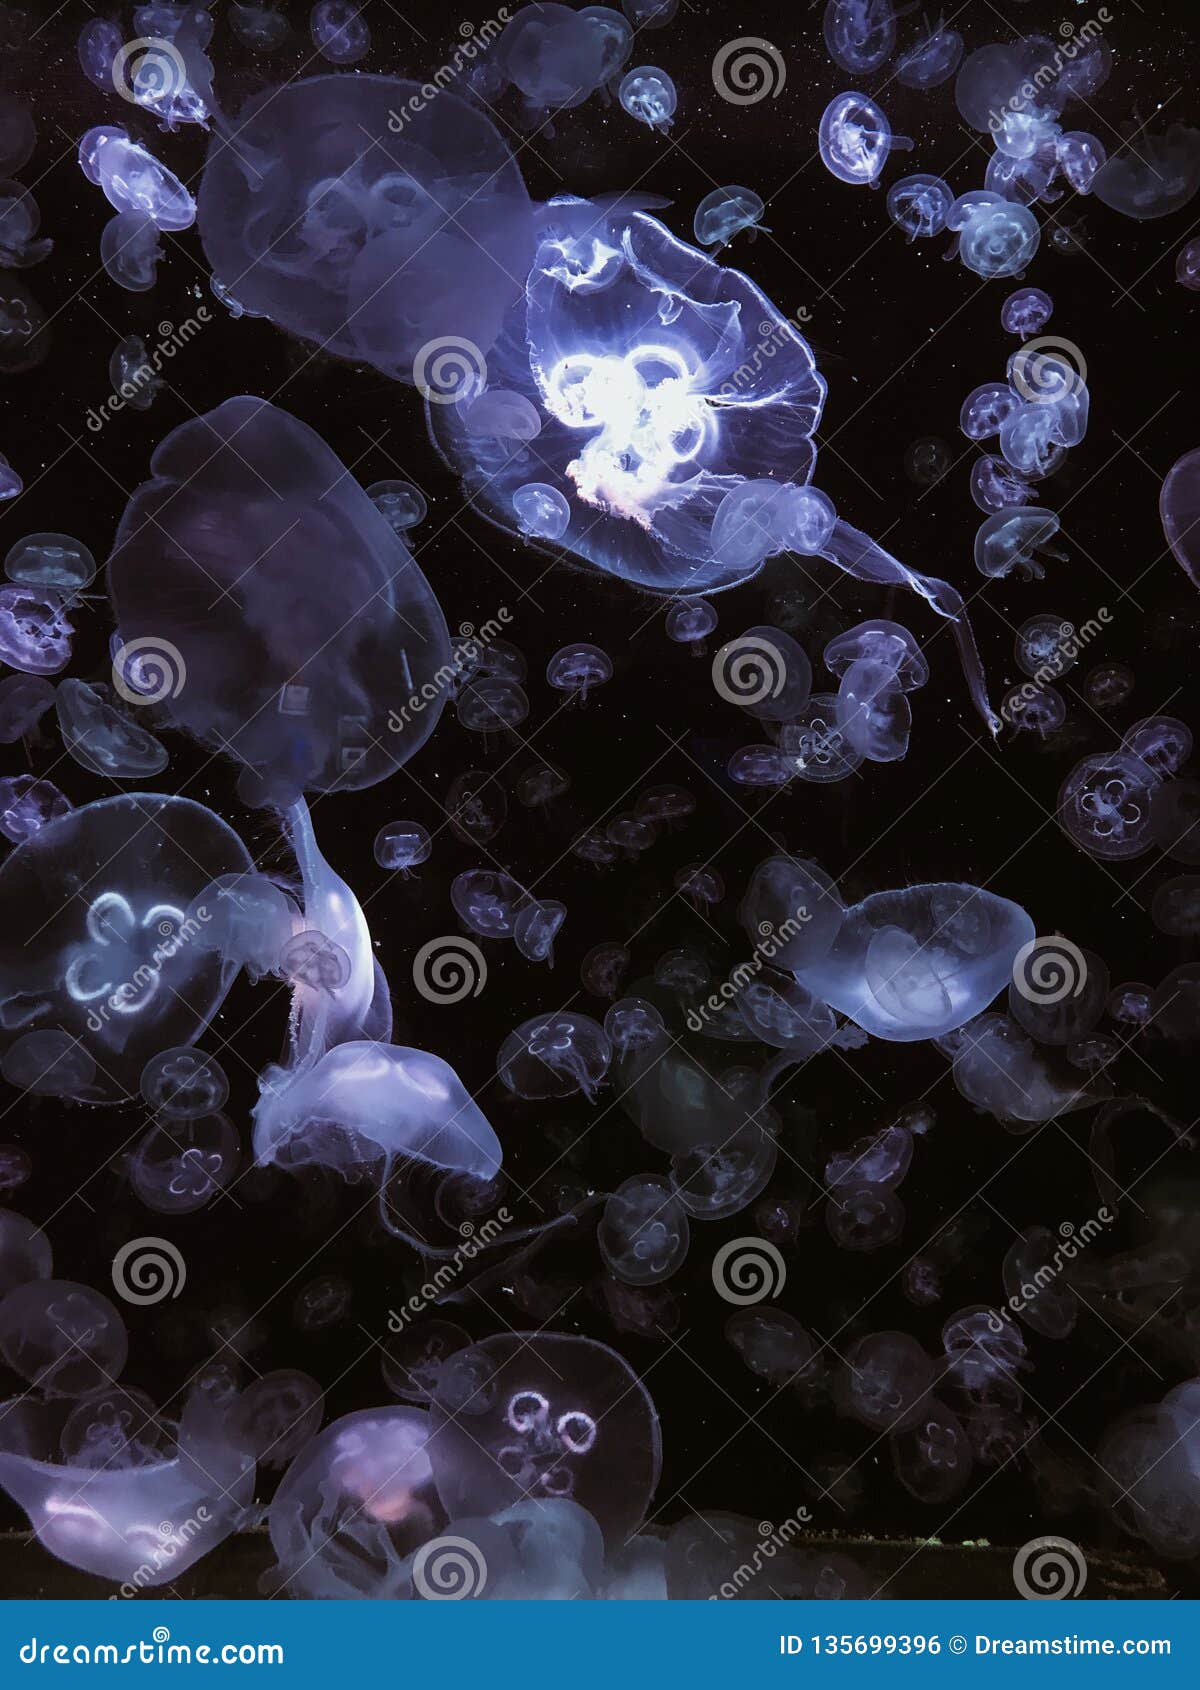 gellyfish purple ocean sea vsco